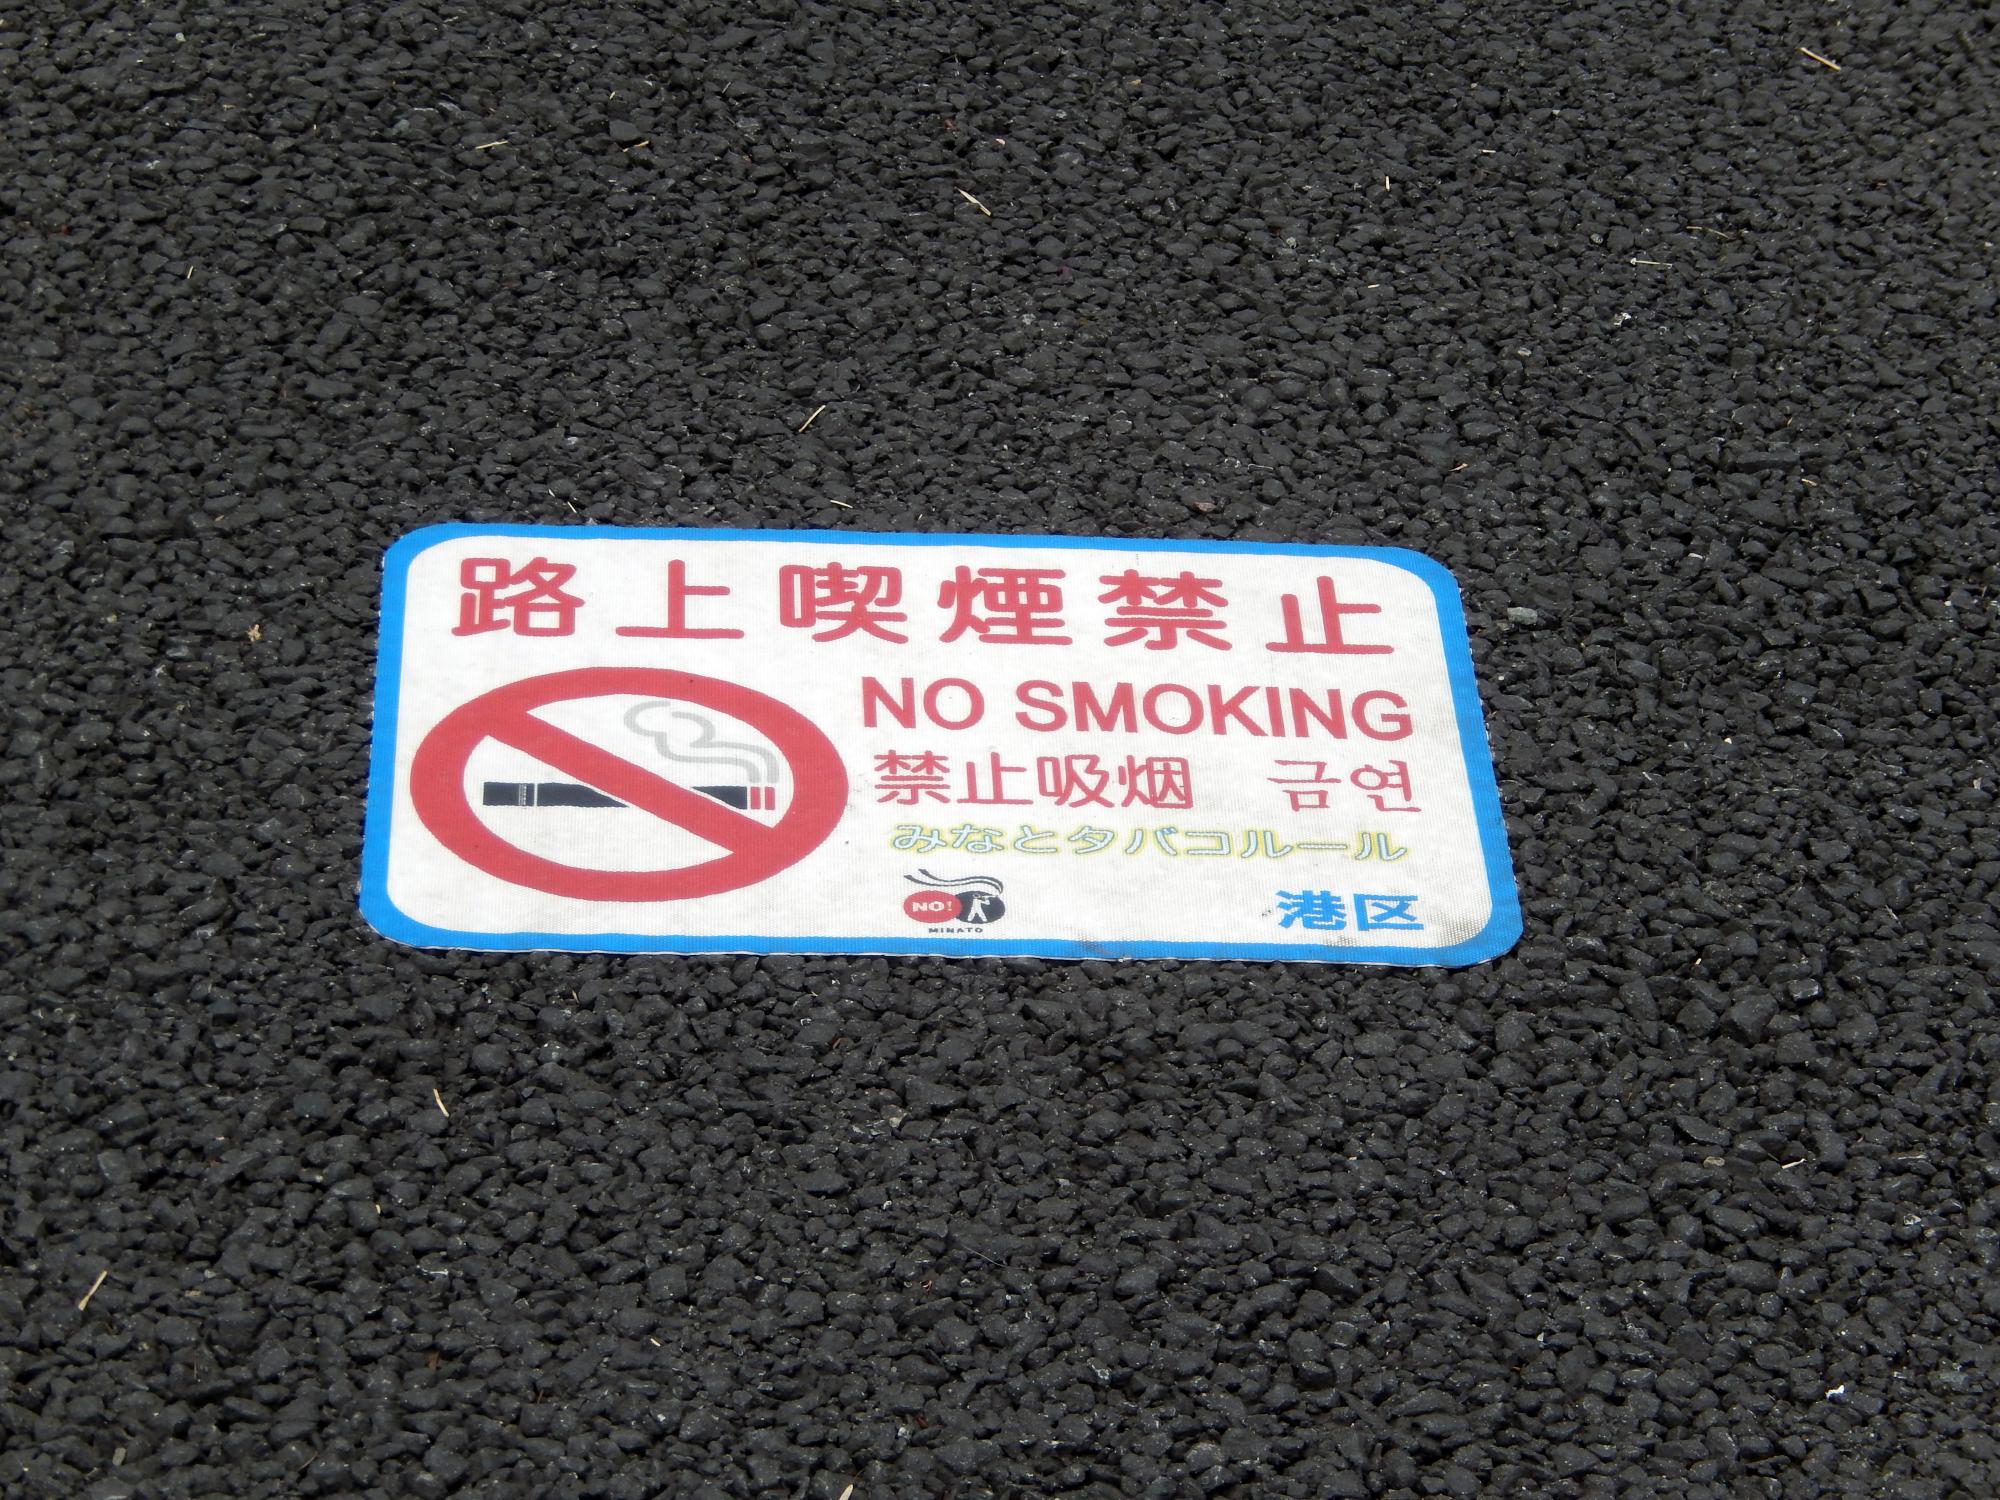 Signs Of Japan - No Smoking While Walking